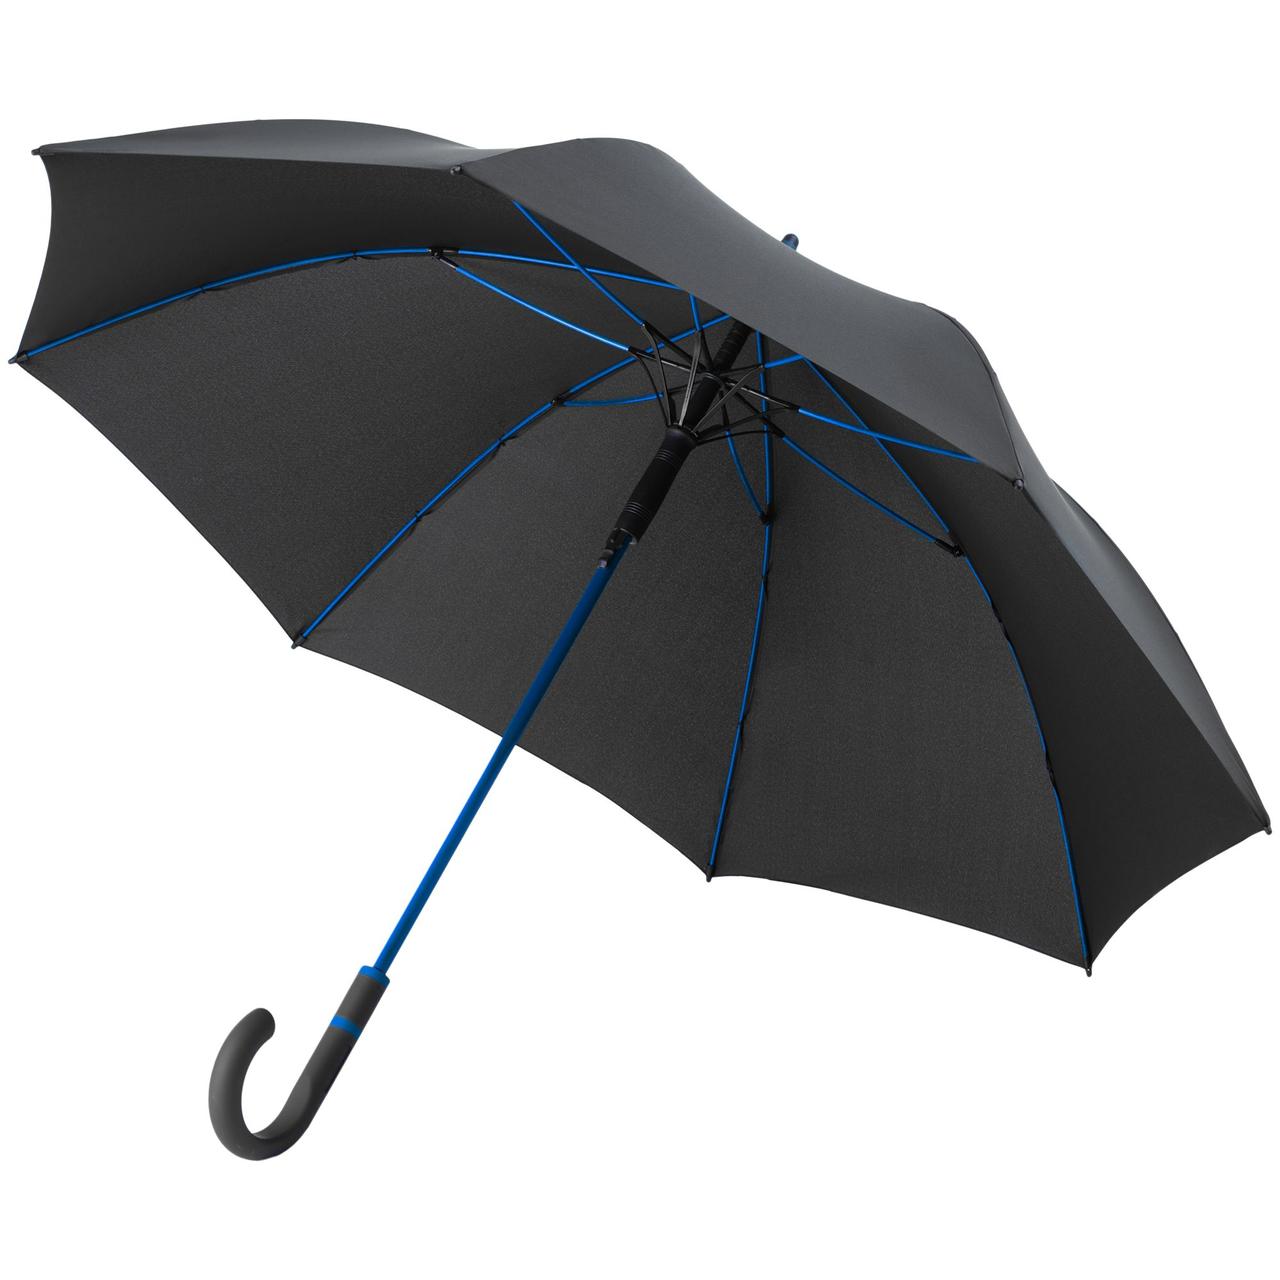 Зонт-трость с цветными спицами Color Style ver.2, ярко-синий (артикул 64716.44), фото 1